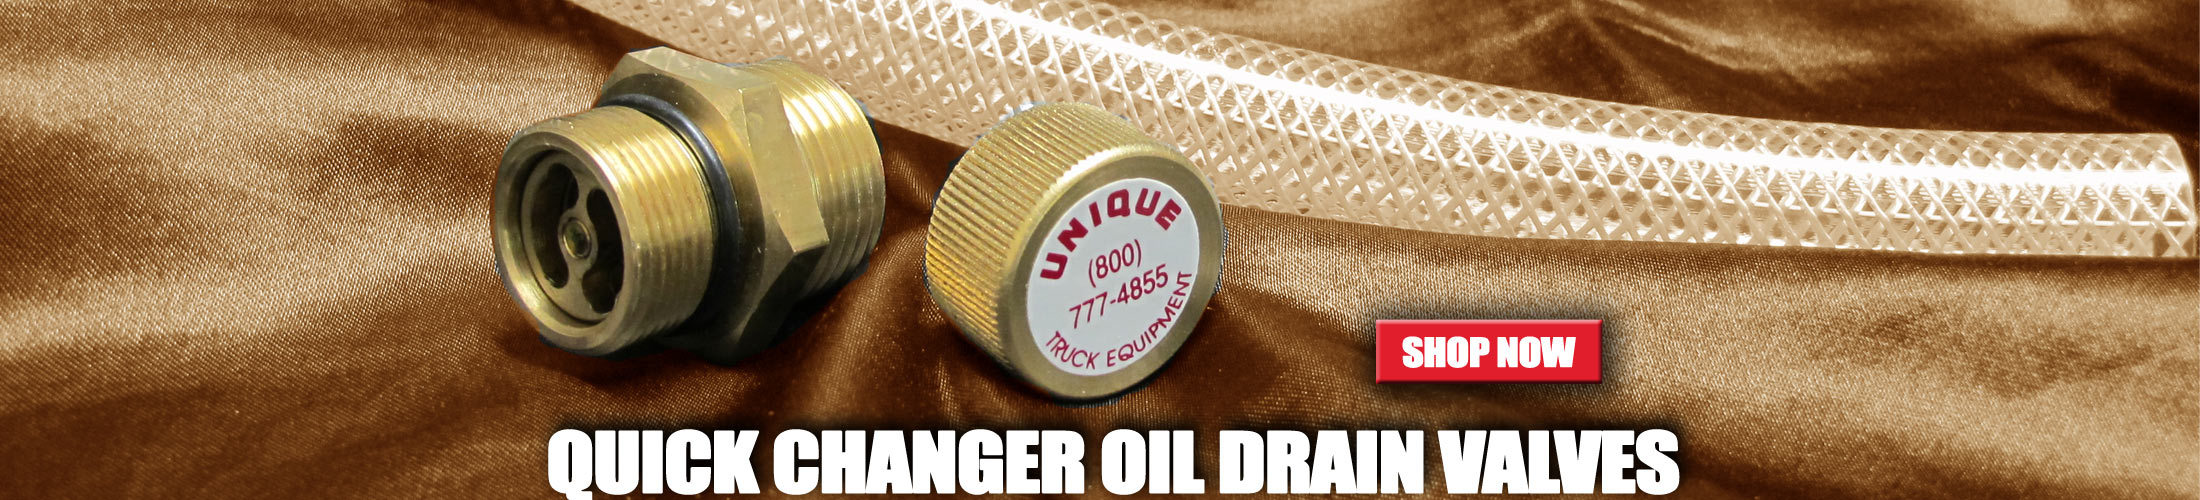 Quick Changer Oil Drain Valves